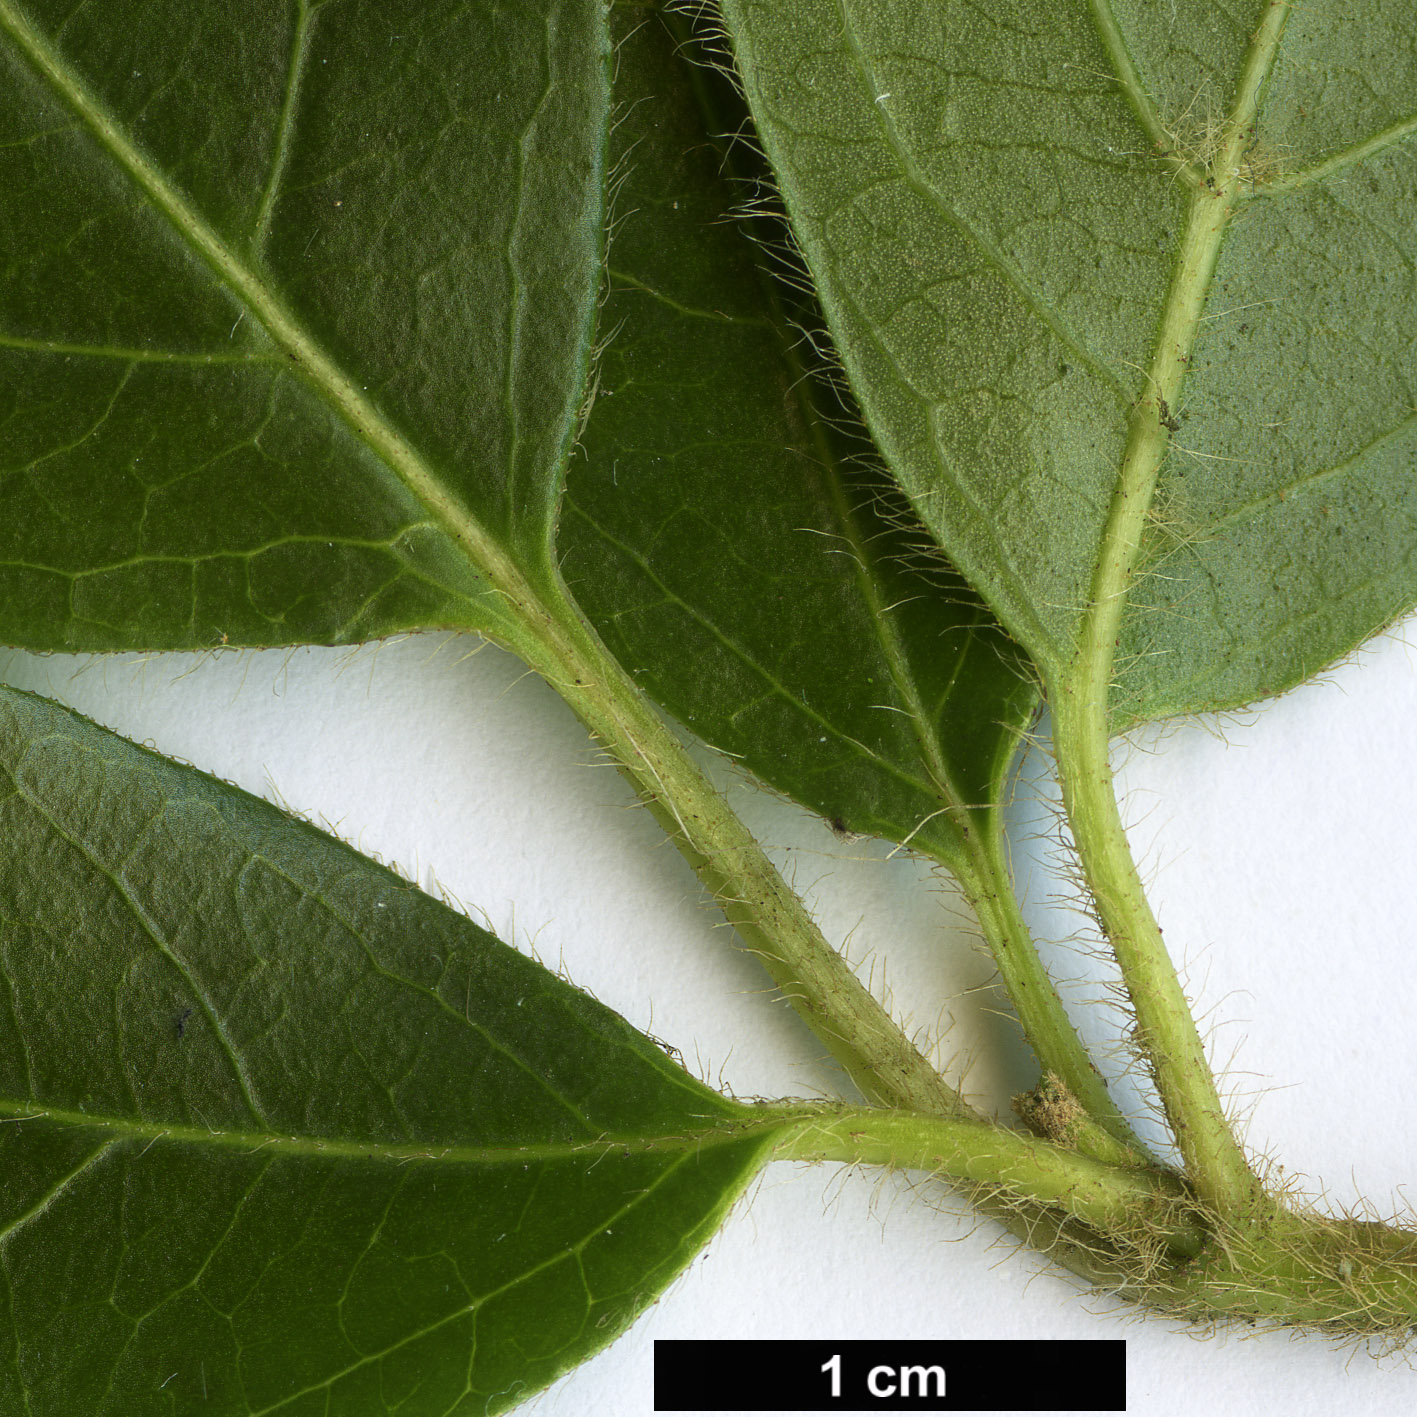 High resolution image: Family: Adoxaceae - Genus: Viburnum - Taxon: tinus